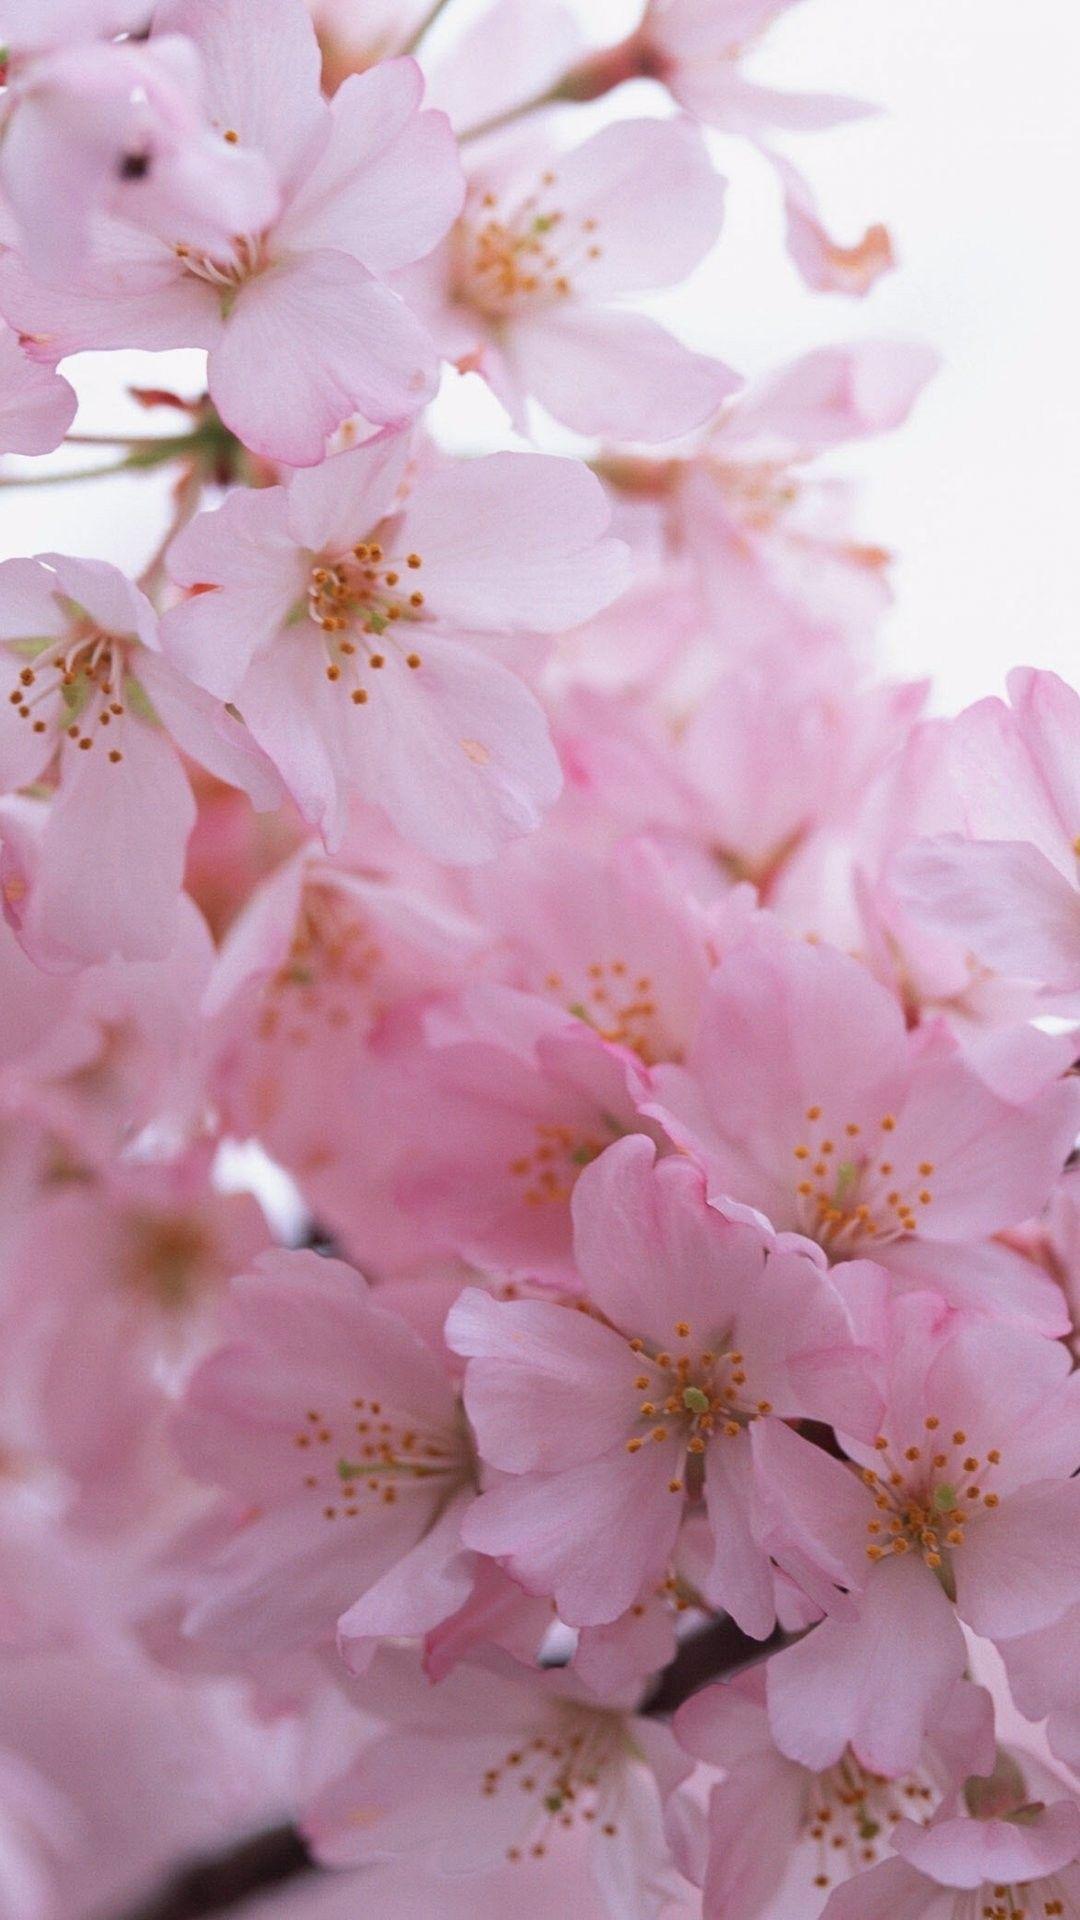 1080x1920 Chim cổ điển Hoa mùa hè mùa xuân nhìn hoa hồng thời gian hoa hình nền